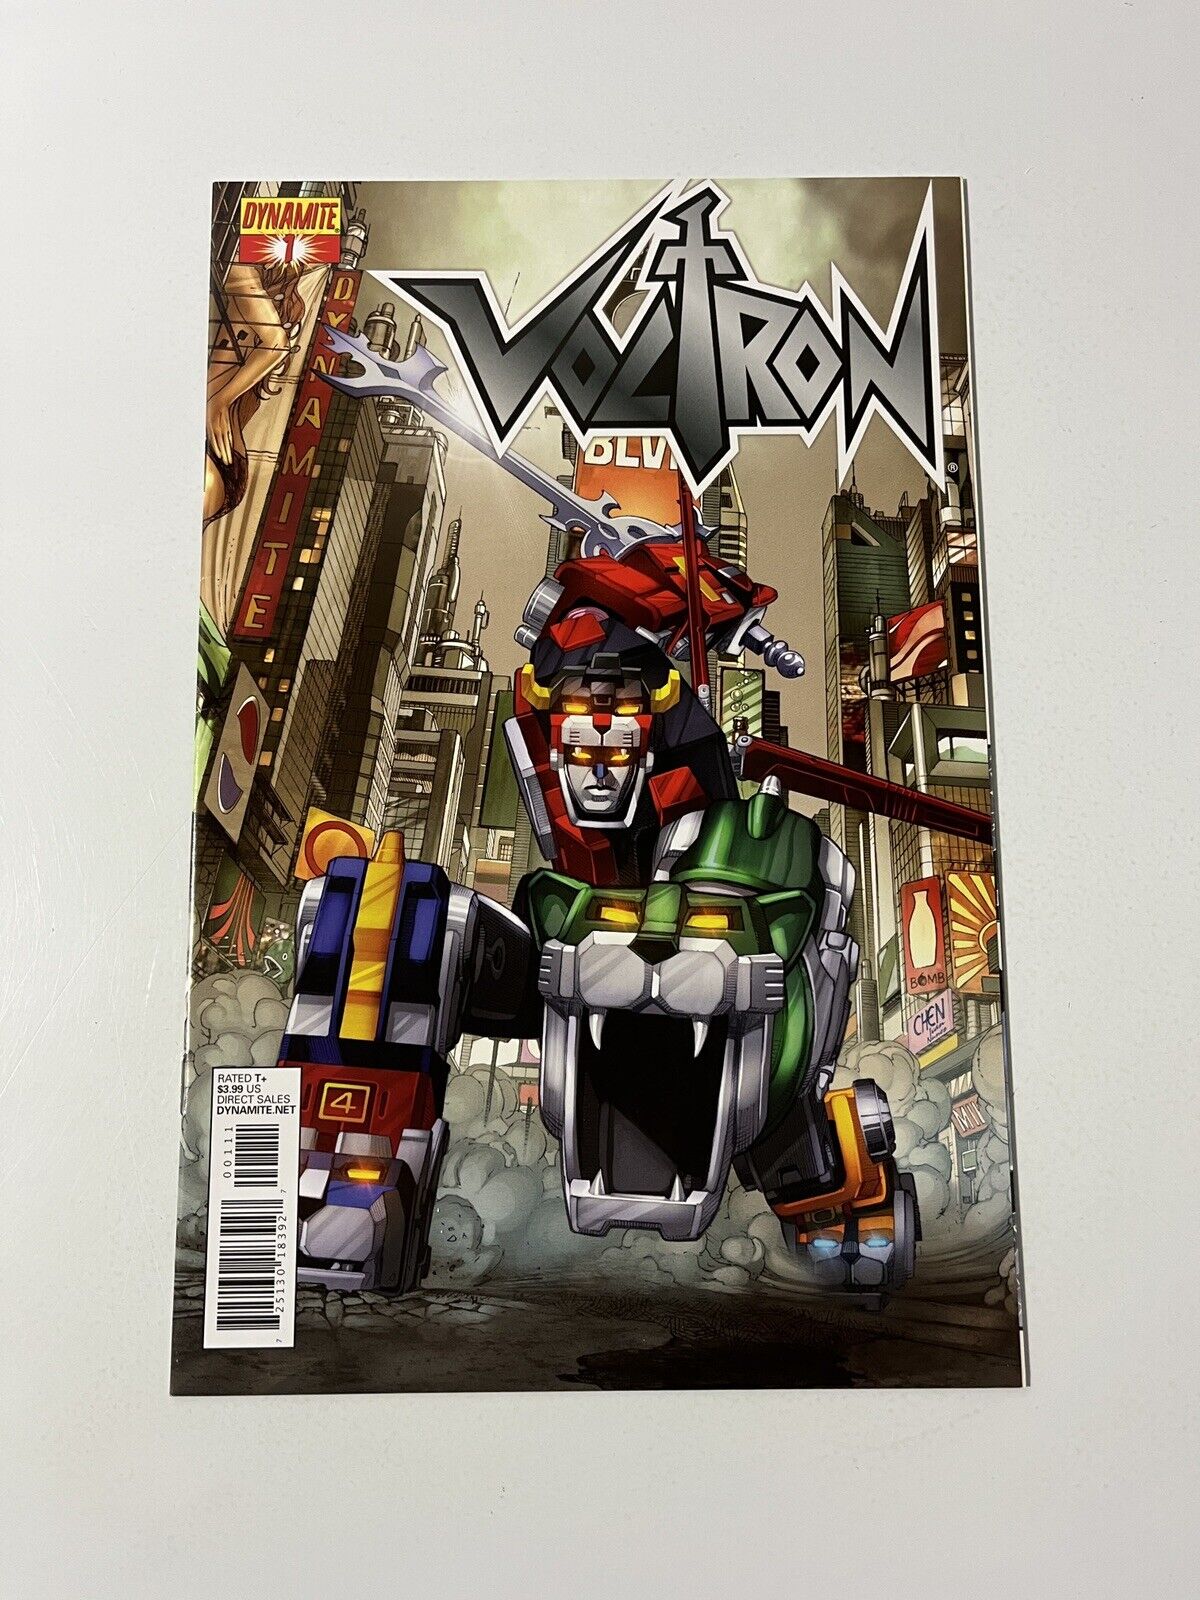 VOLTRON #1 CHEN Color Variant Dynamite Comics 2011 Cover C